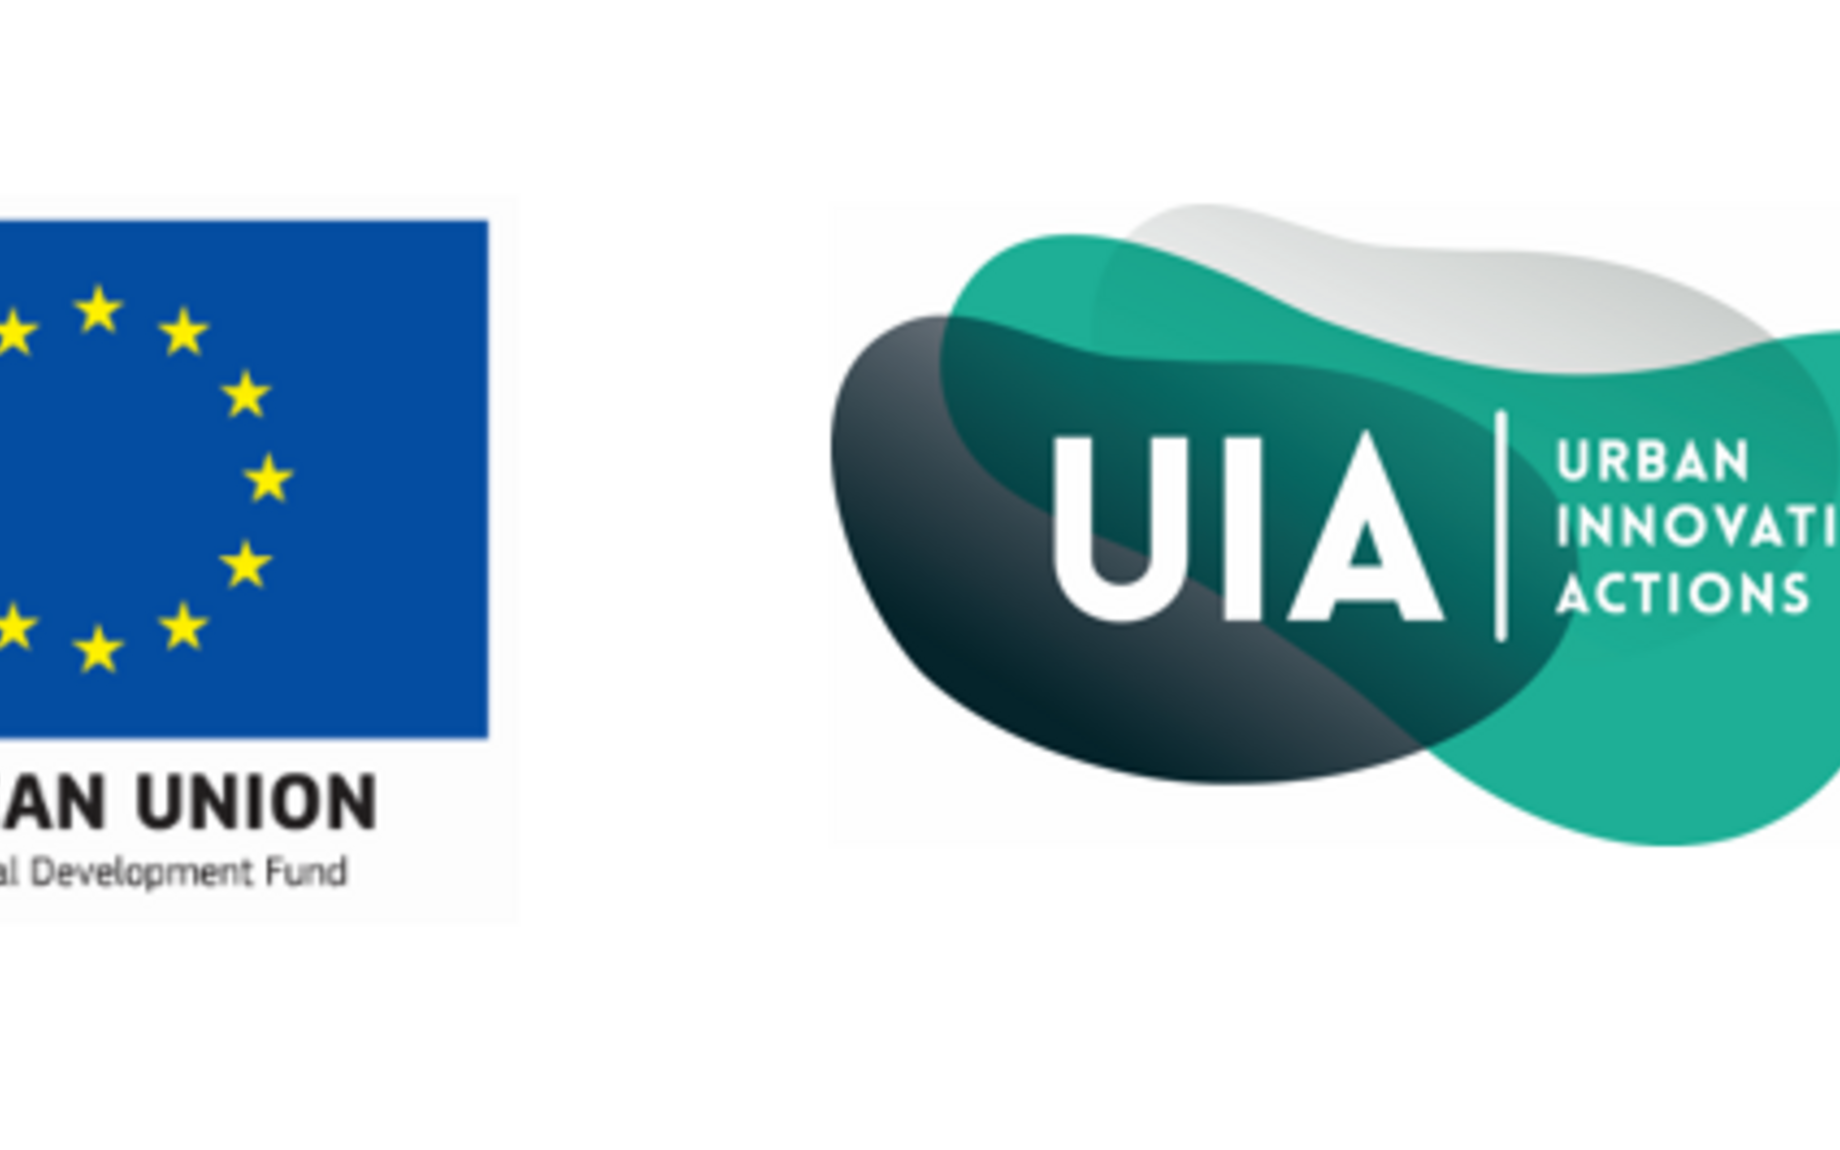 Banner UIA+EU logo